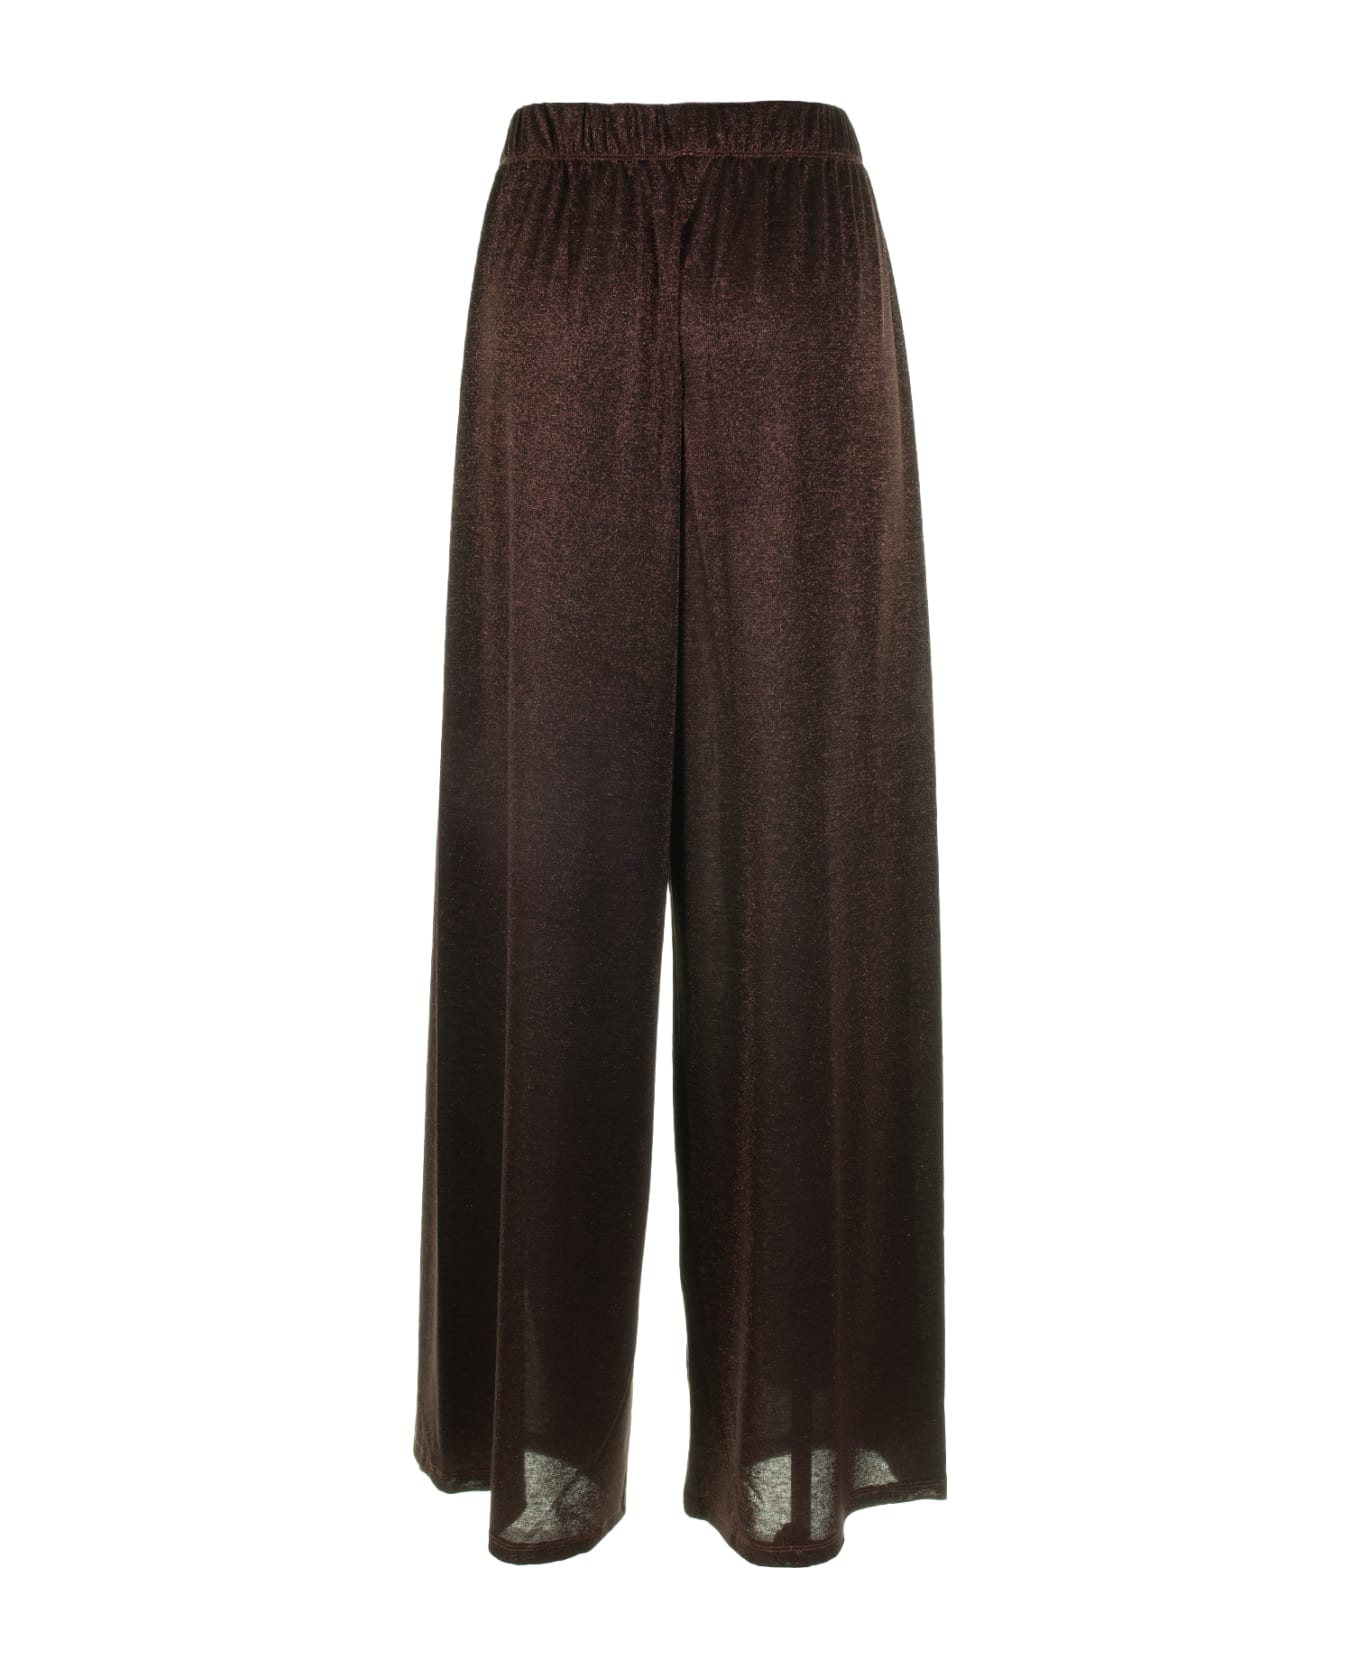 Marella High-waisted Trousers In Bronze Lurex - BRONZO LUREX